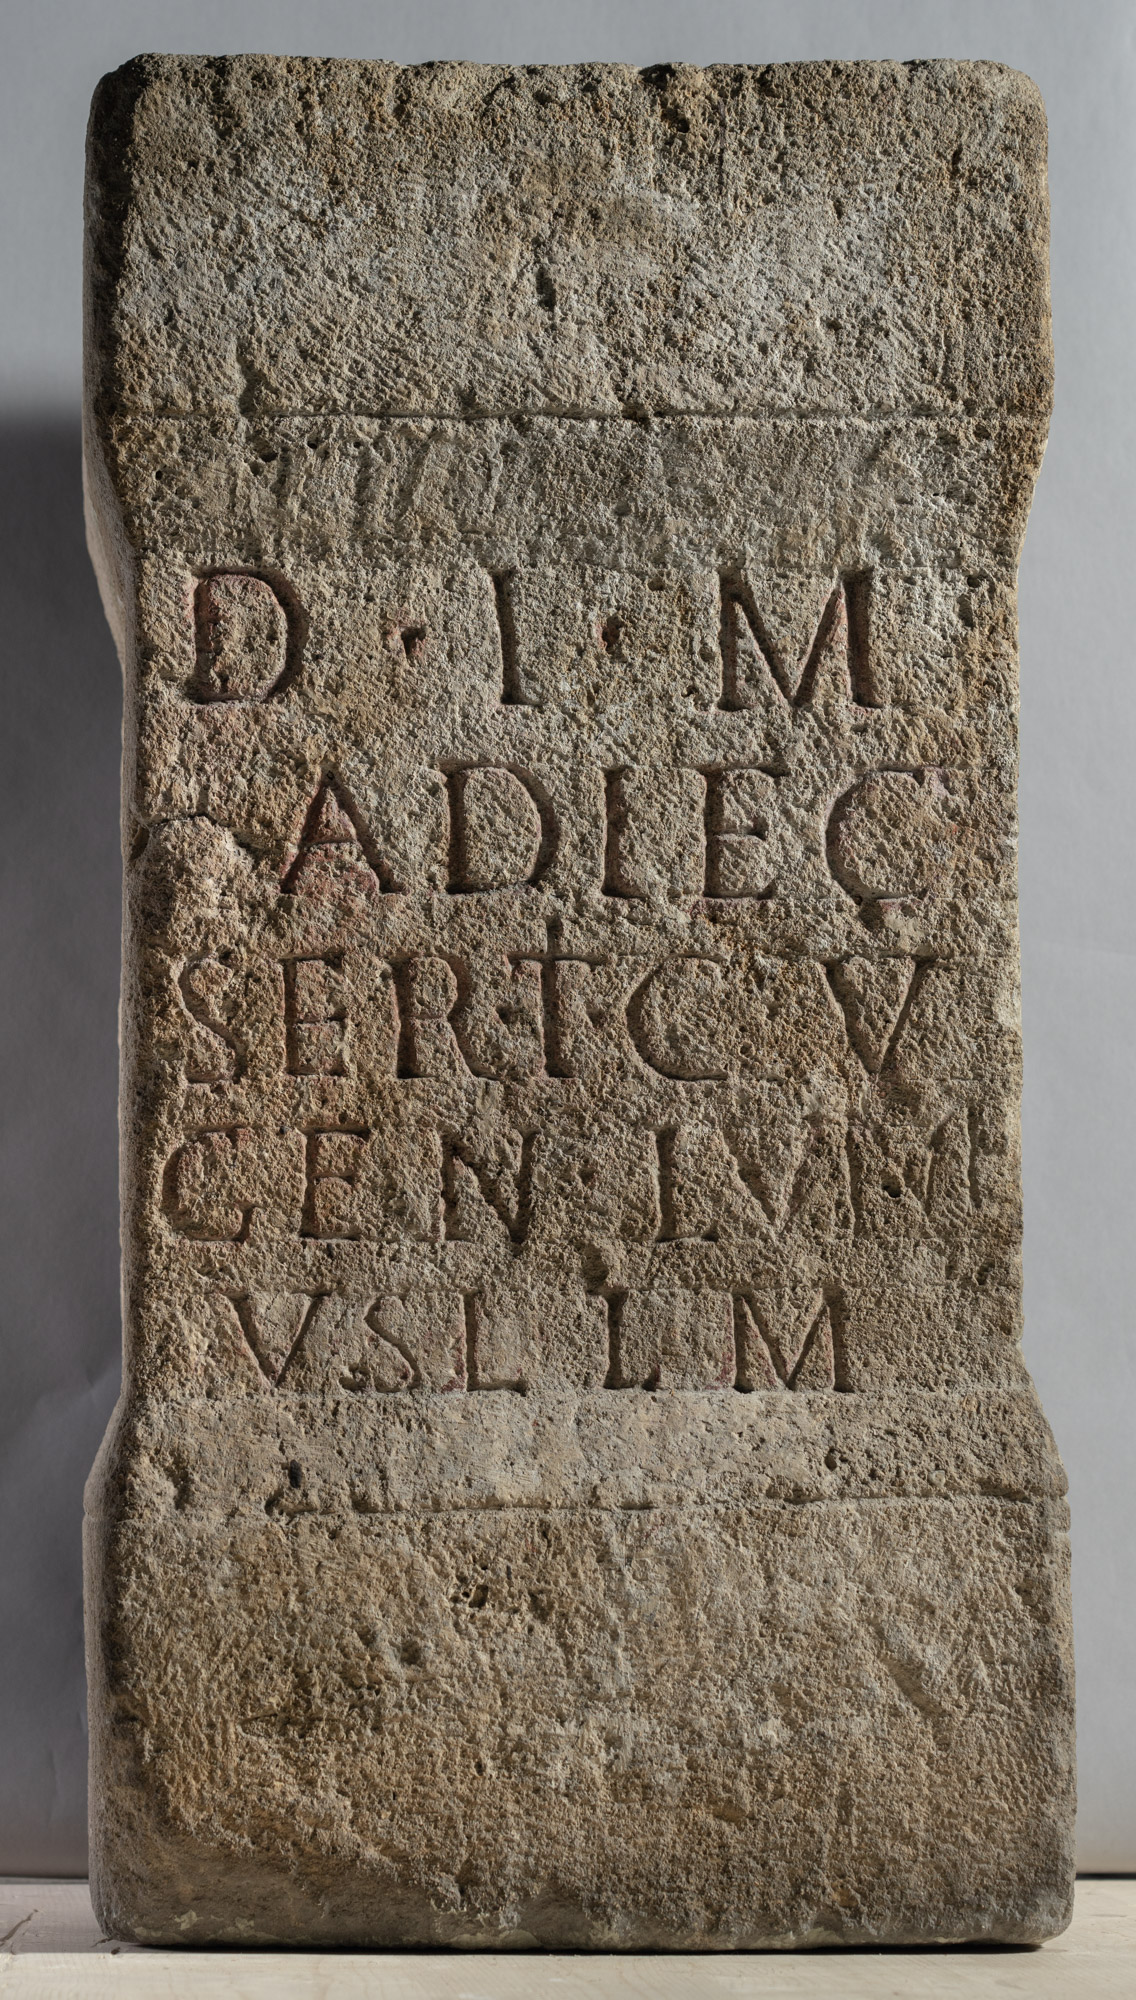 Altar of Adlectus from Carnuntum